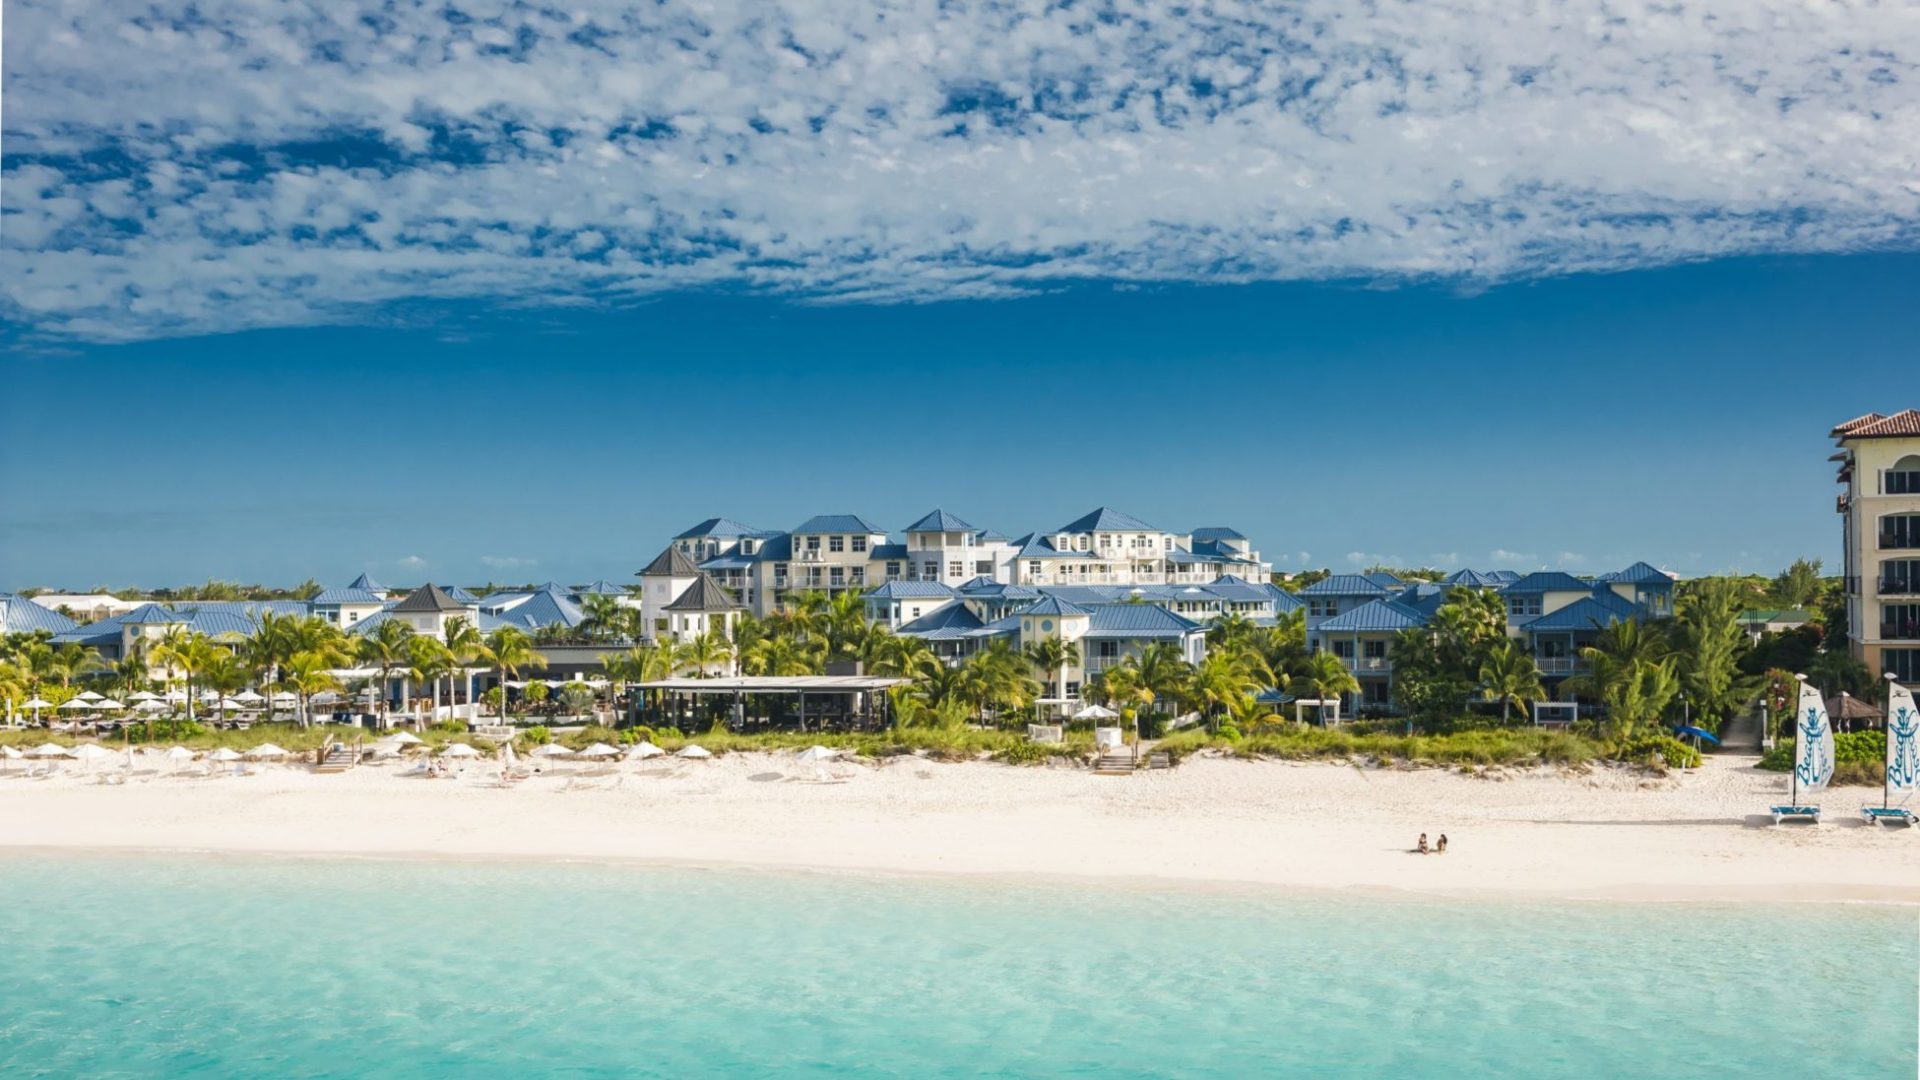 18 Beaches Resorts Insider Tips & Tricks BEACHES